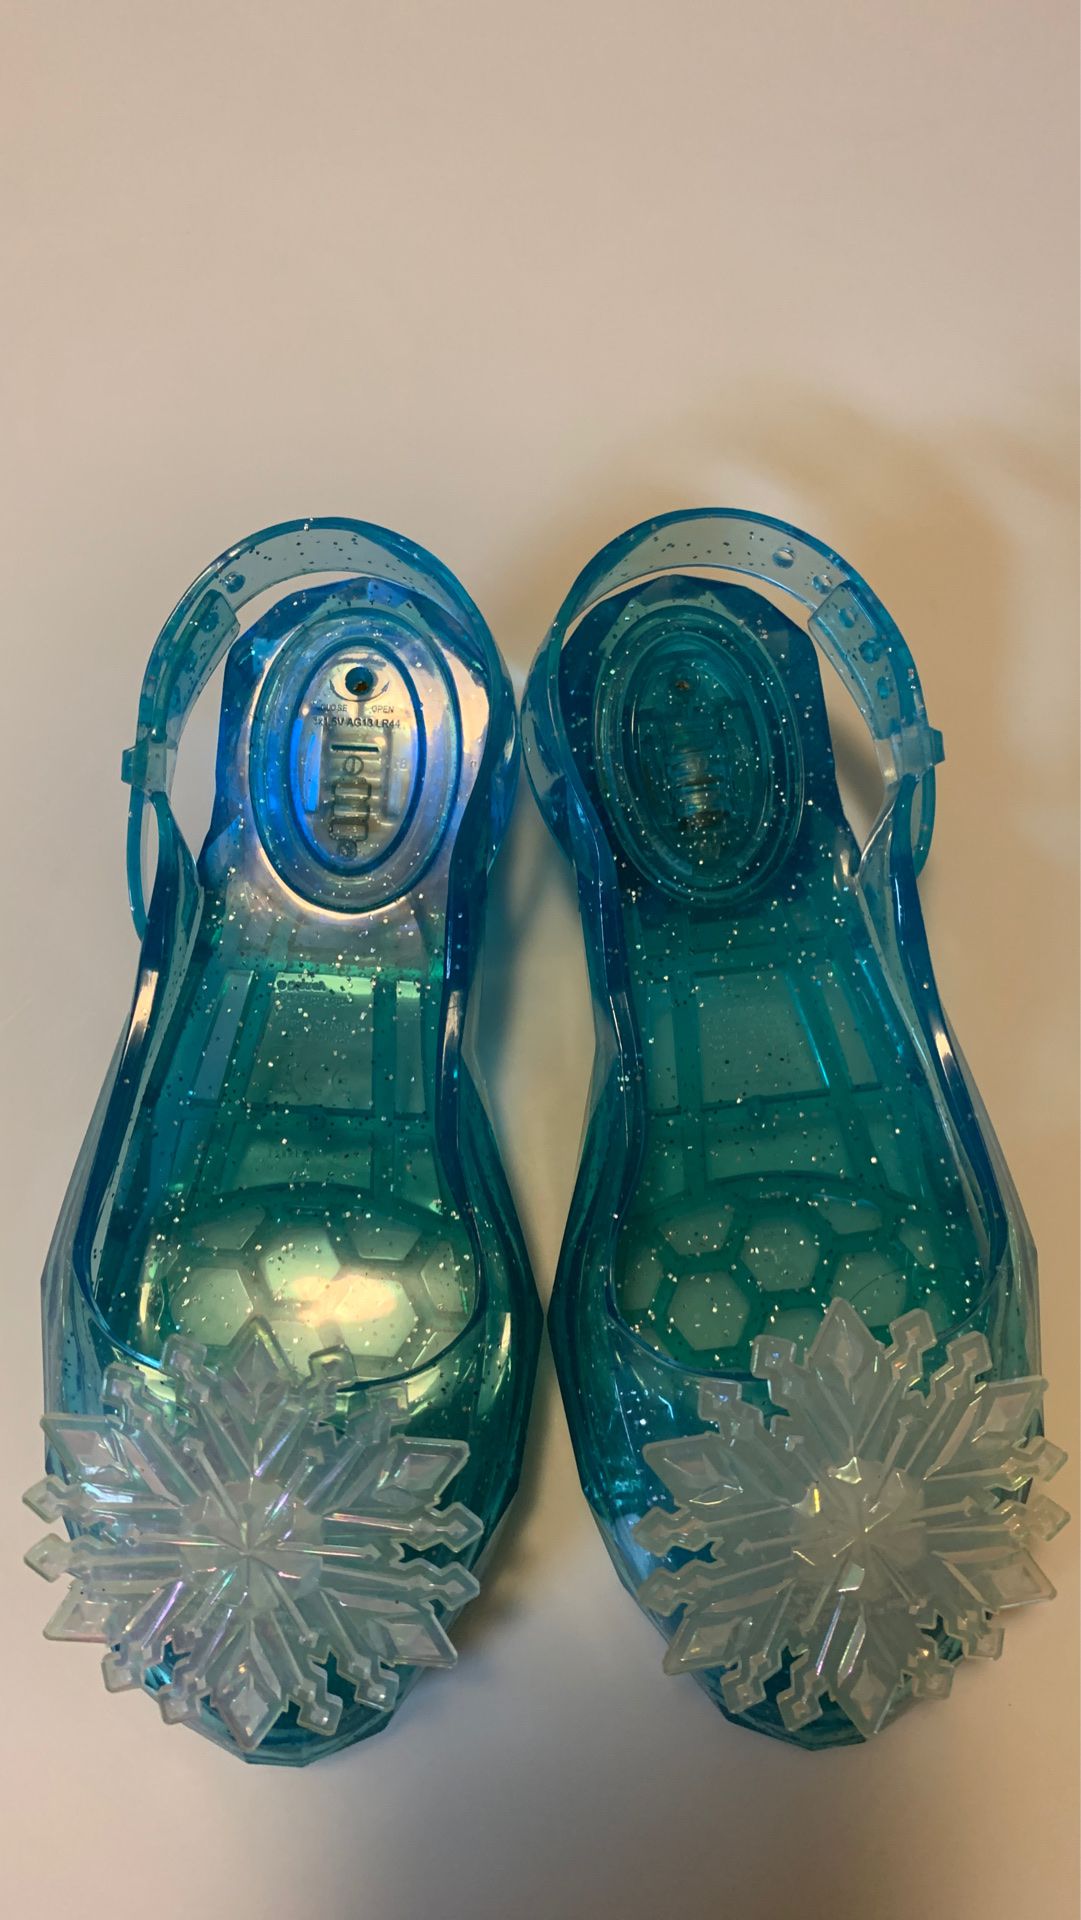 Zapatos de niña de Ana y Elsa